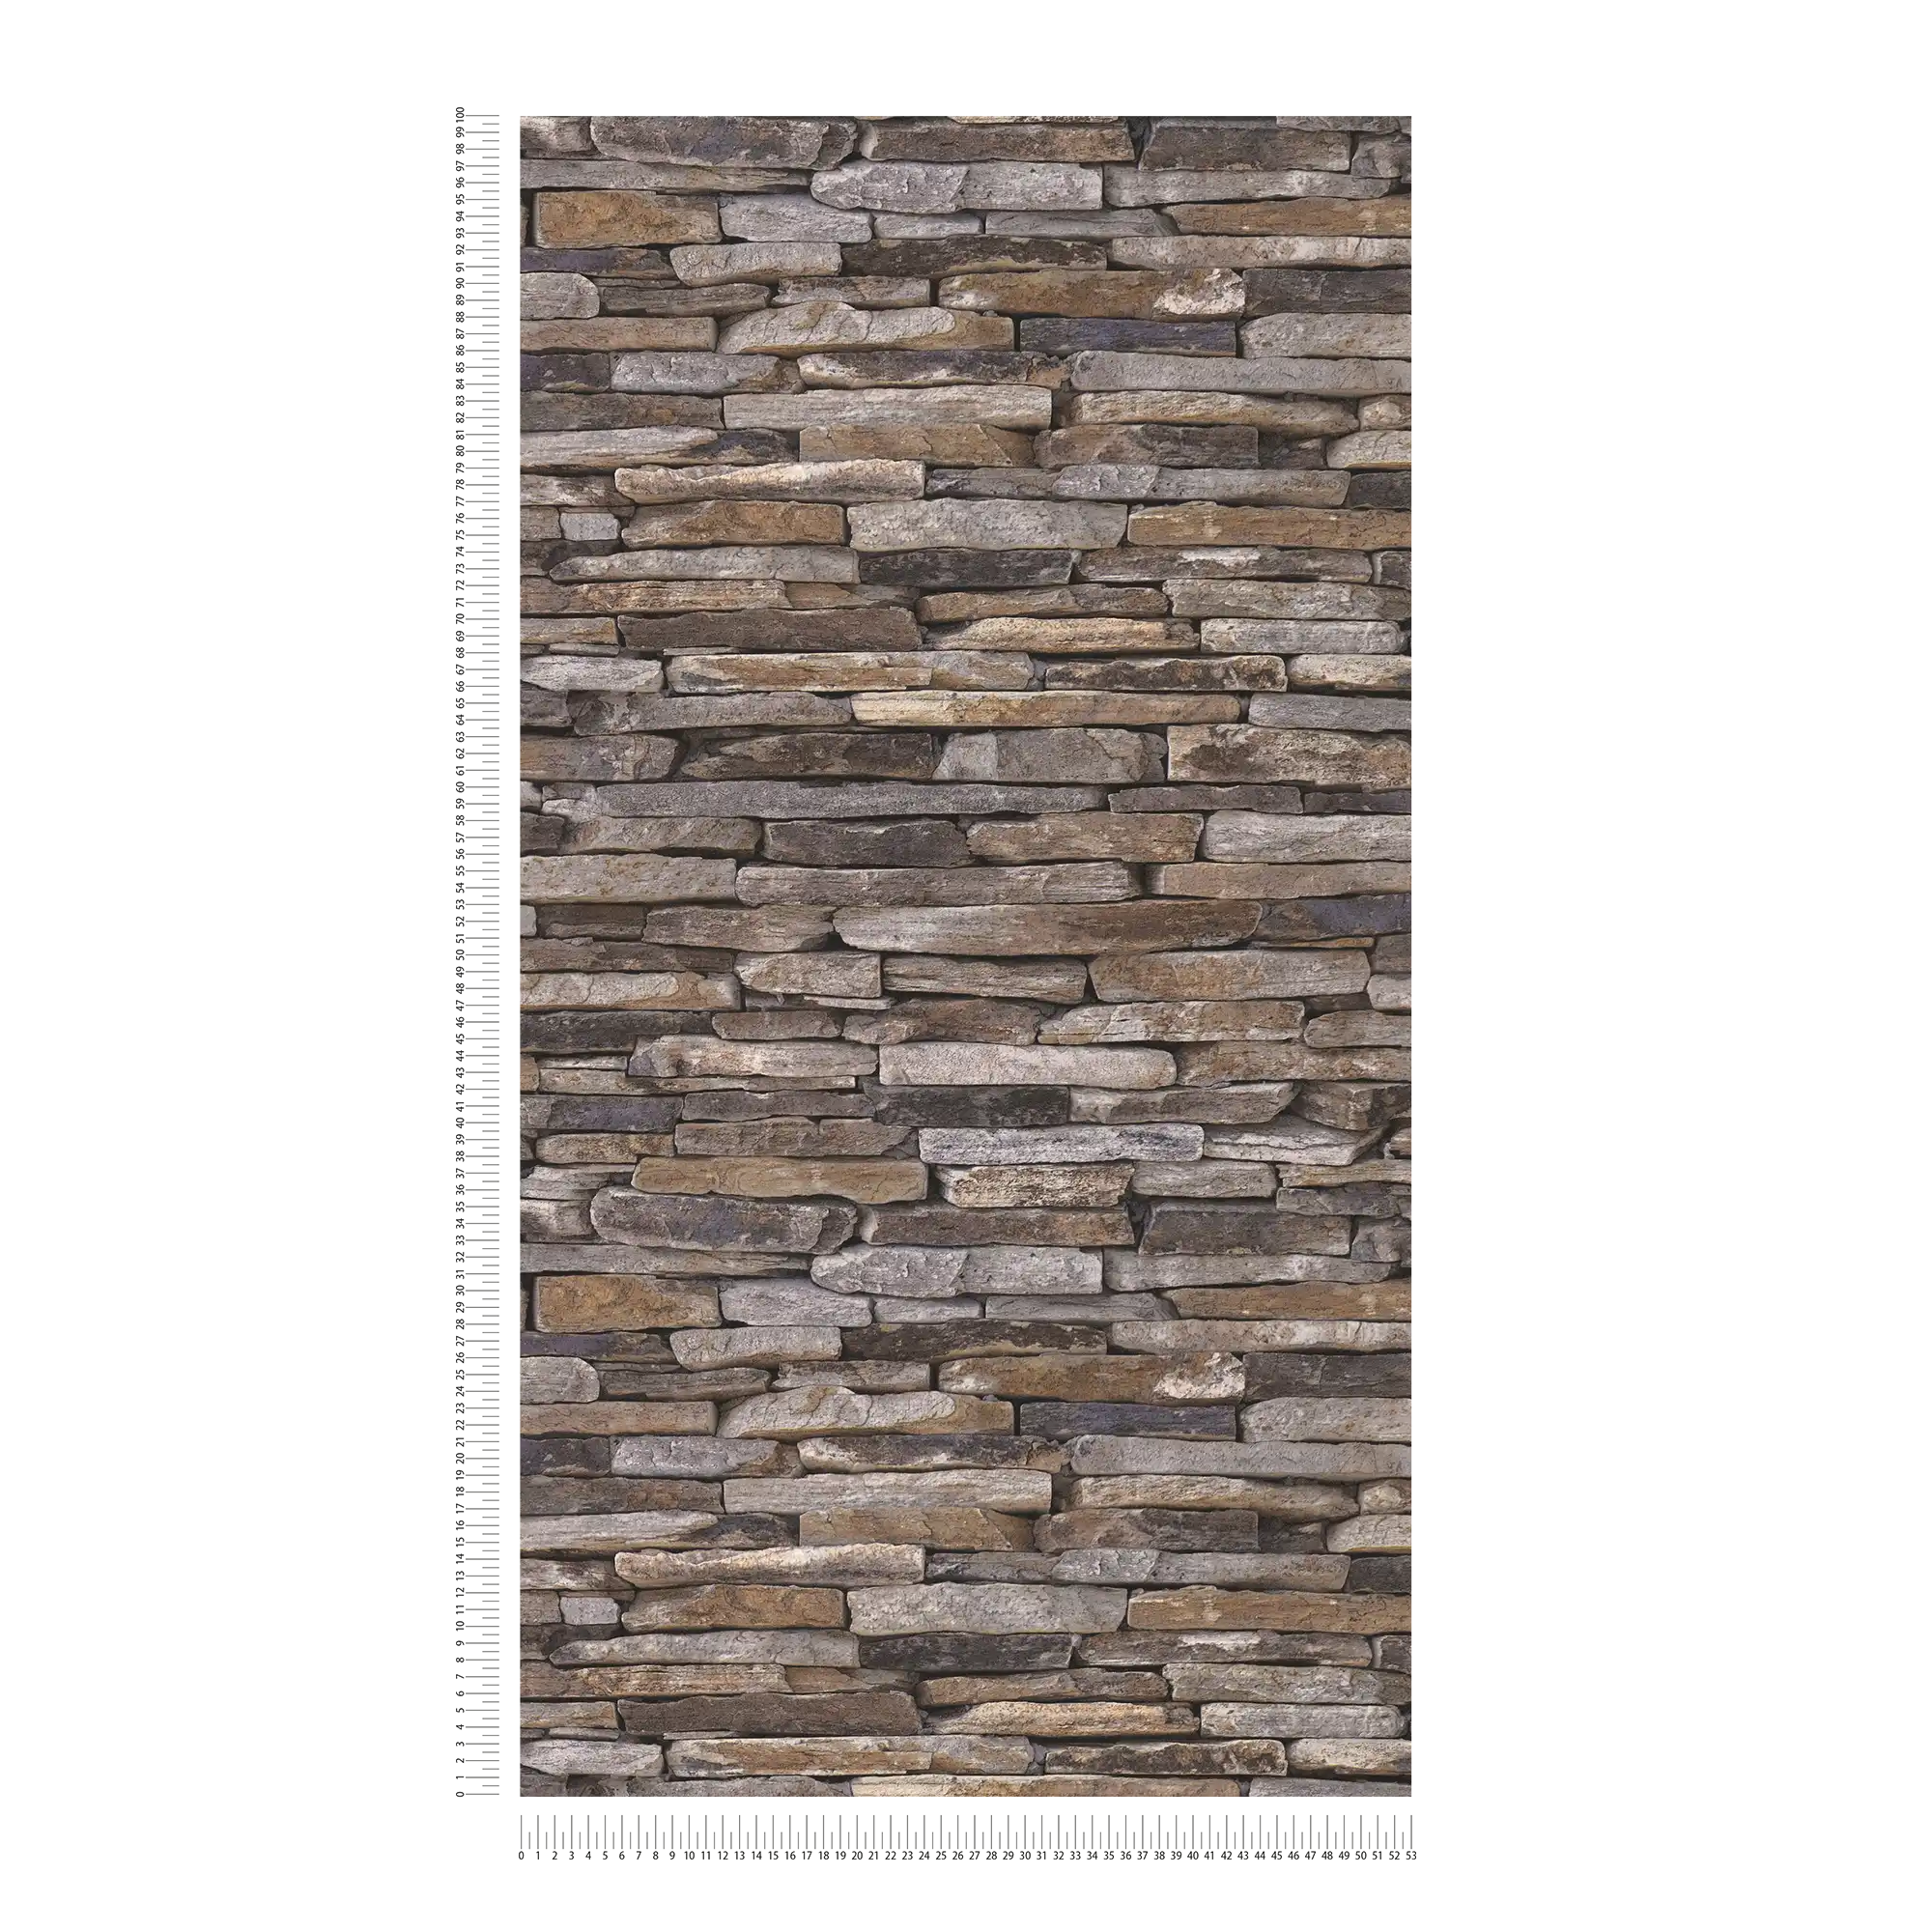             Steintapete mit Trockenmauer & realistischem Naturstein – Braun, Beige, Gelb
        